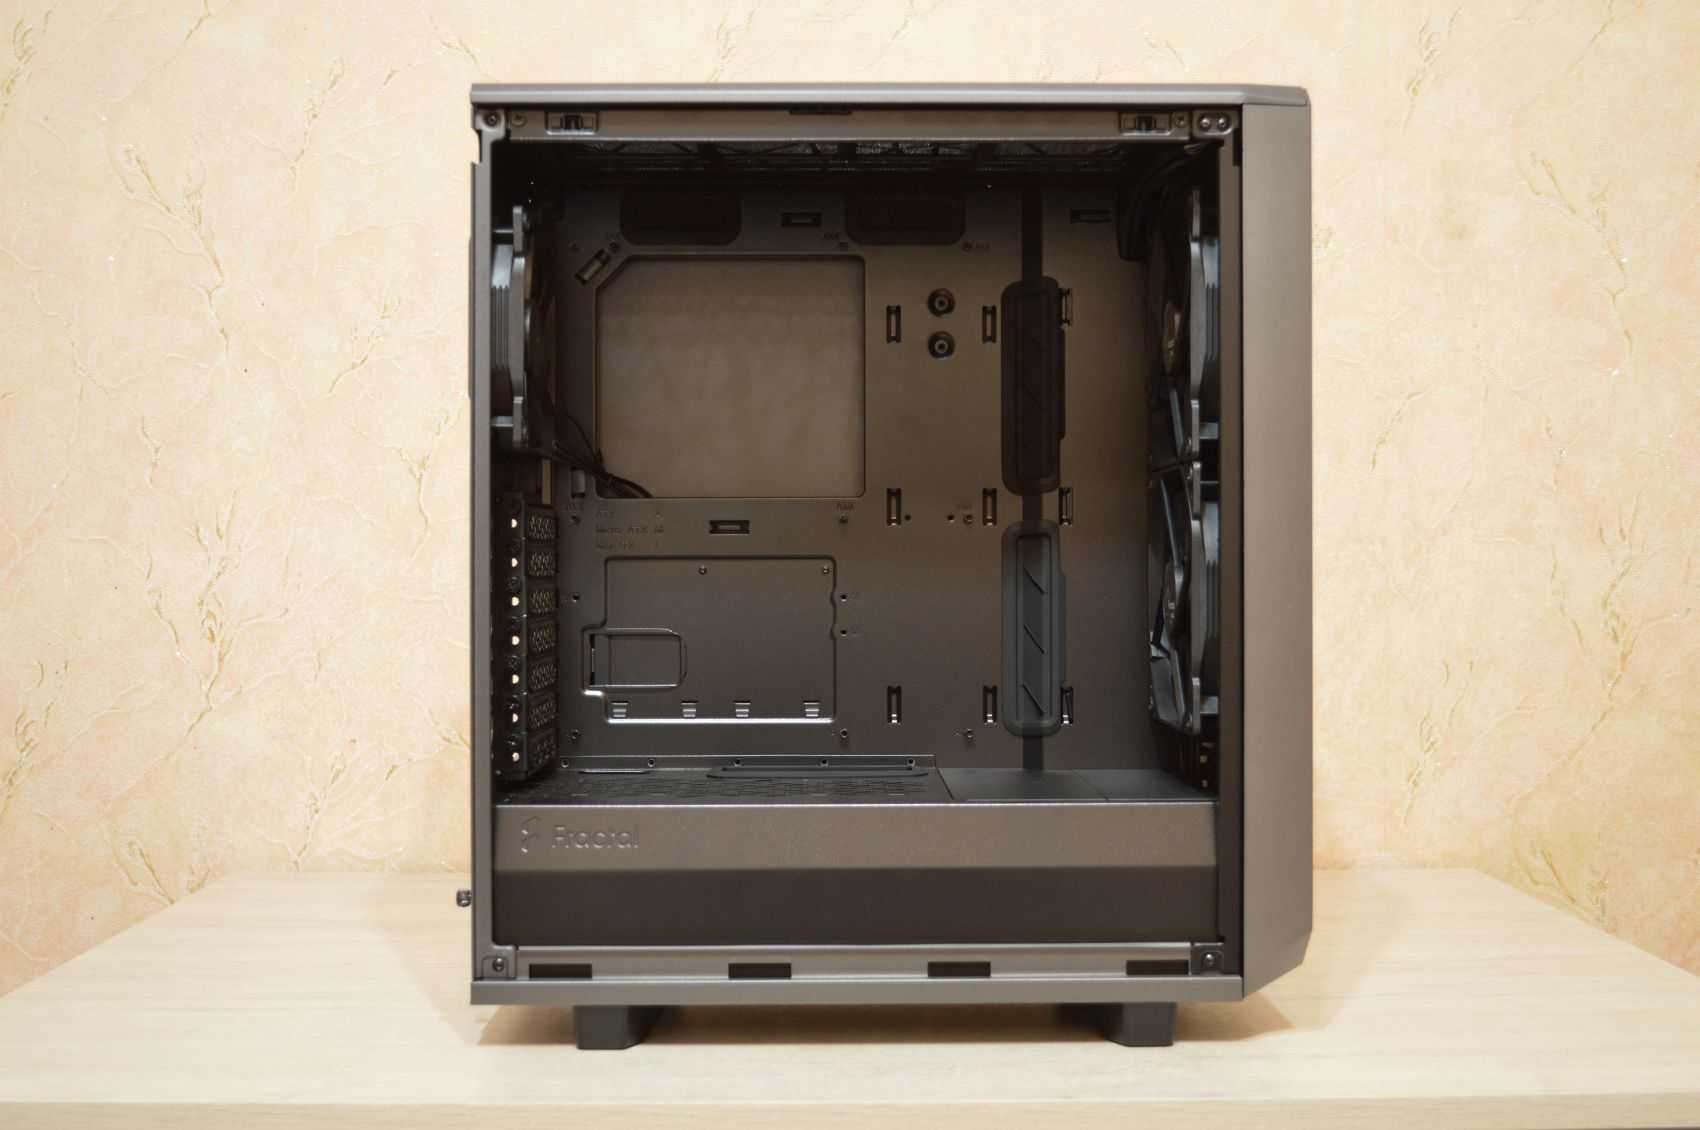 Fractal design meshify 2 review: a high-tdp workstations wonder | tom's hardware